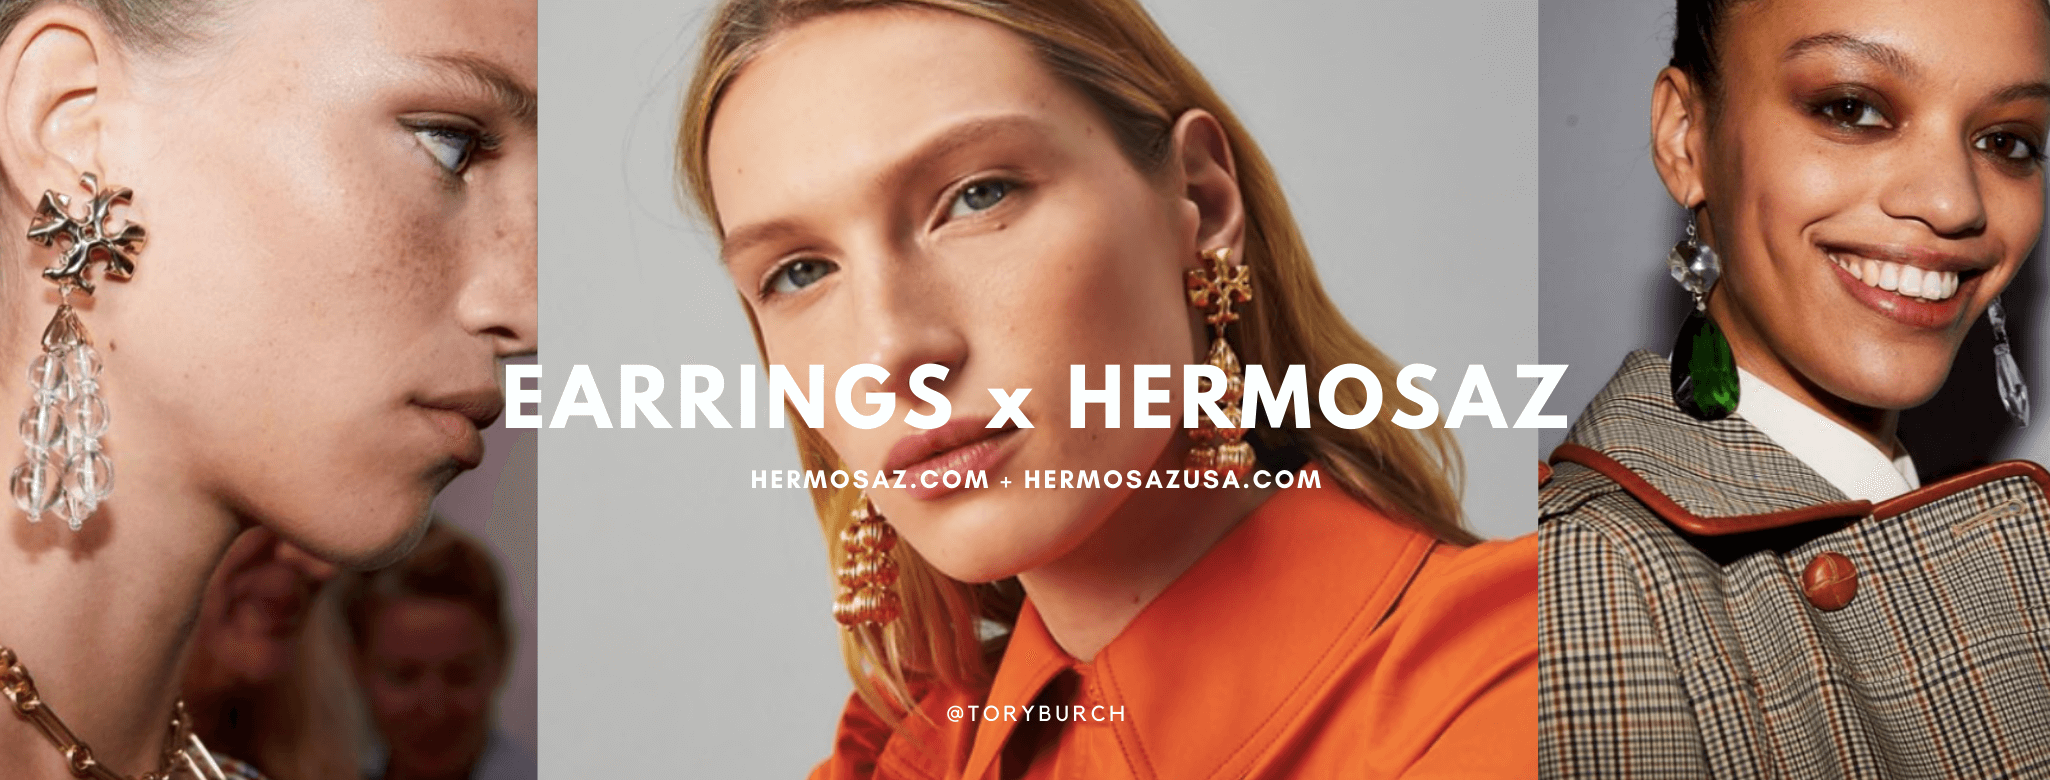 Earrings x Hermosaz